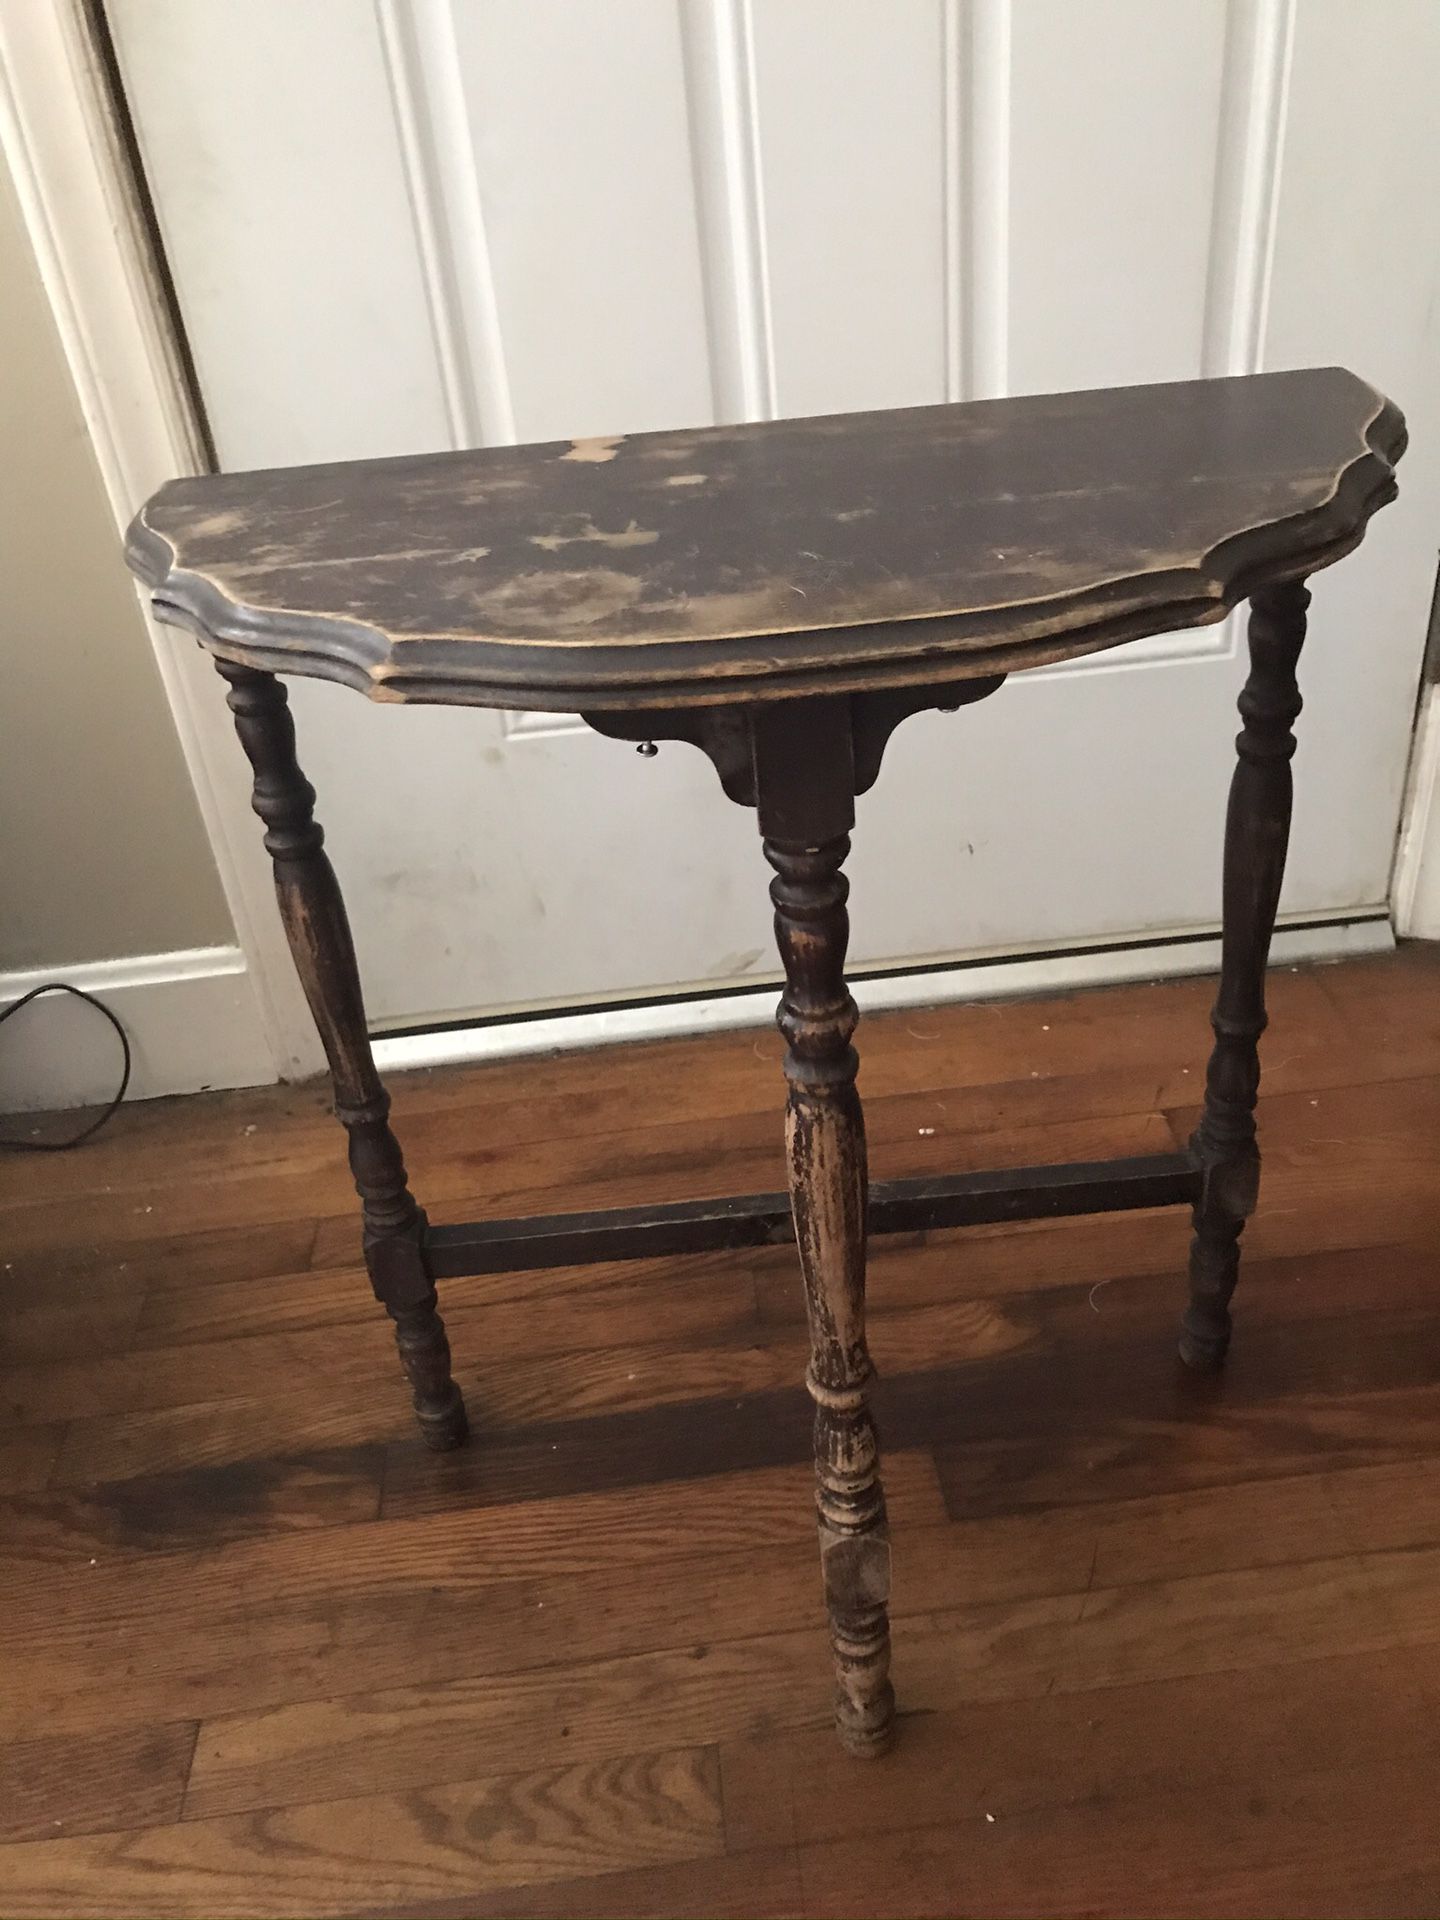 Antique half-moon table